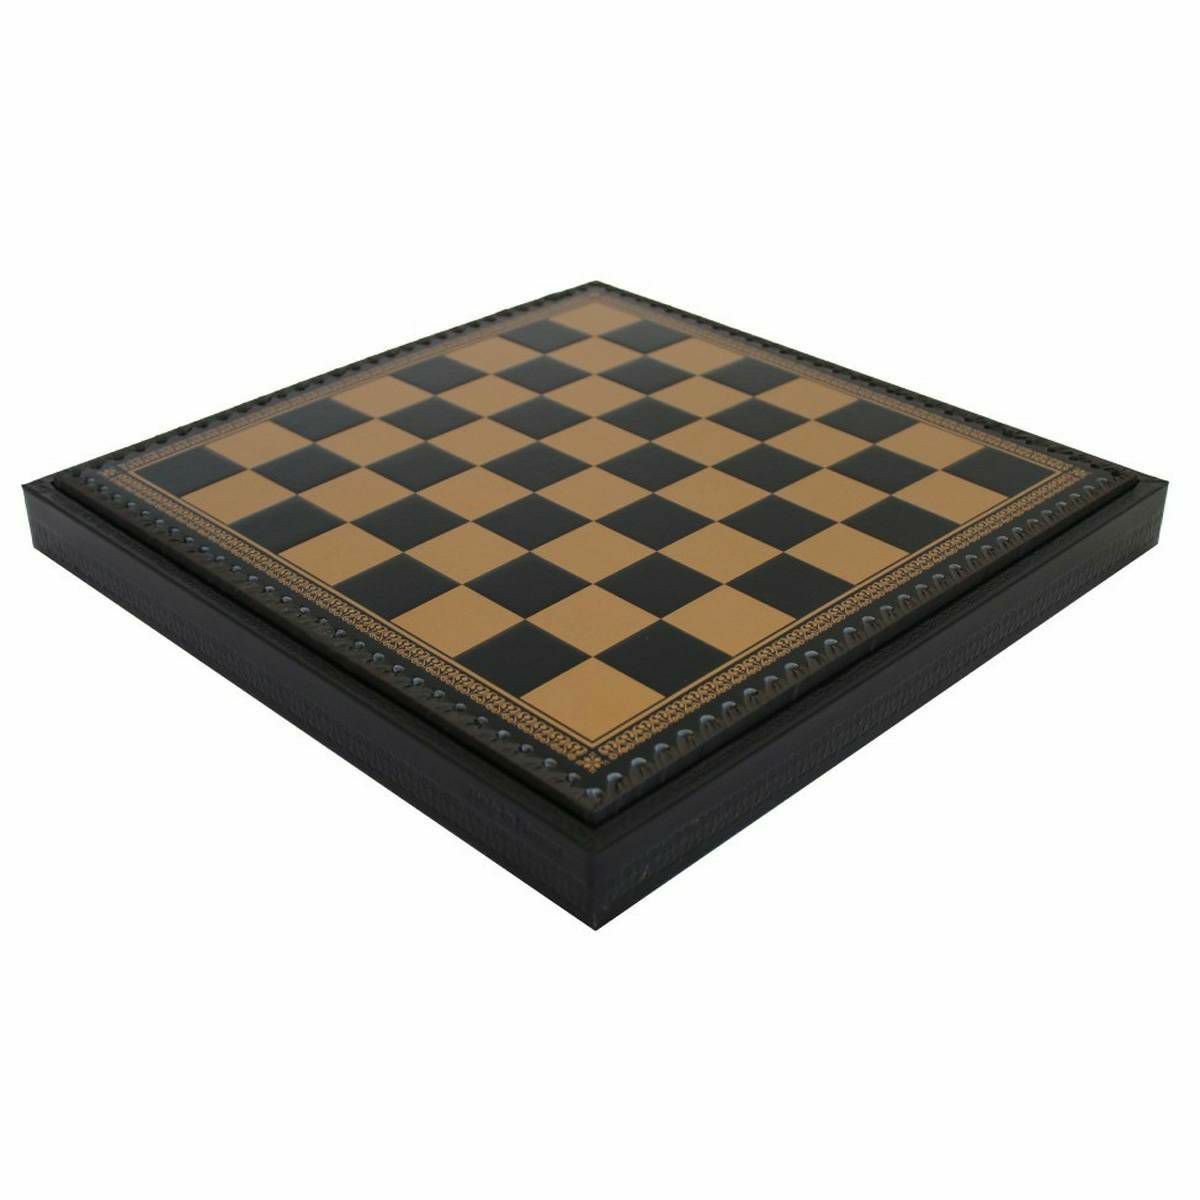 Šahovska ploča Box 35 x 35 cm